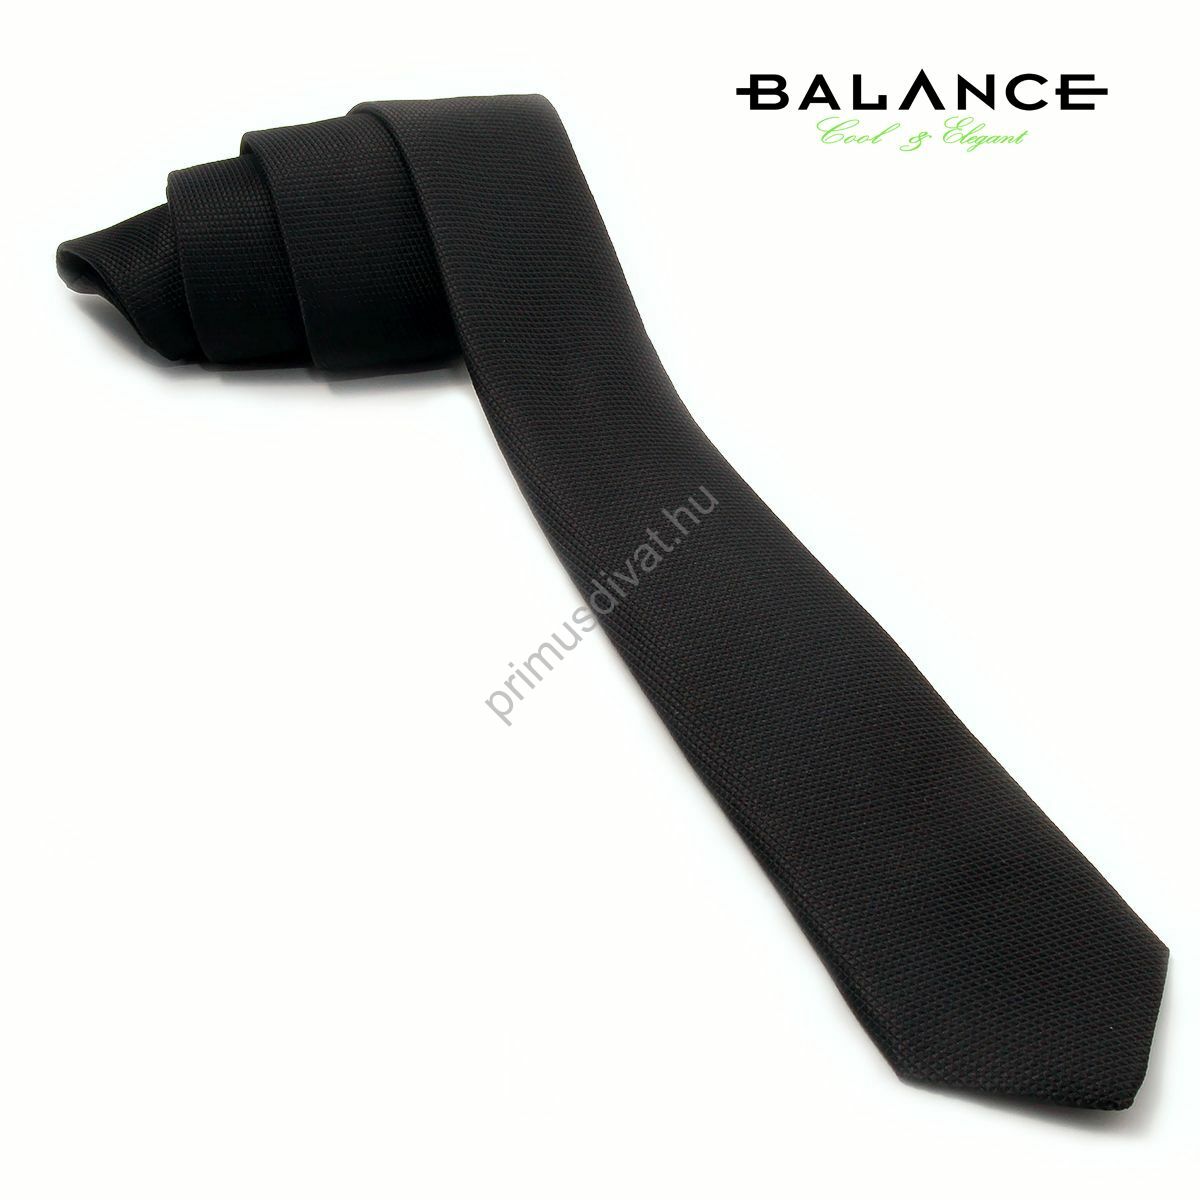 Divatos, keskeny férfi selyem nyakkendő , anyagában apró mintával, finoman fénylő felülettel. Színe fekete.